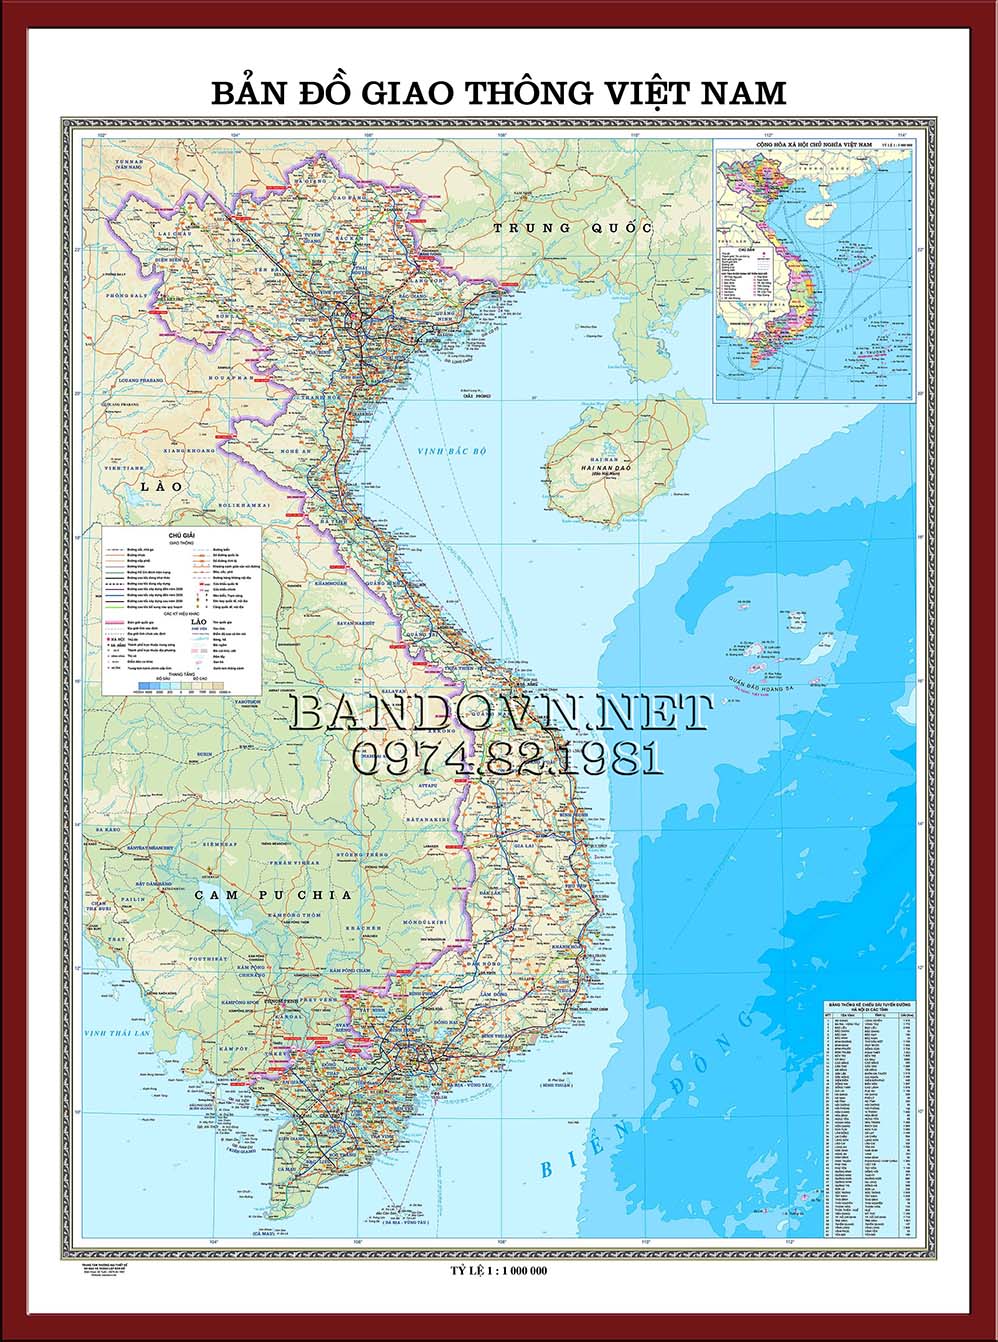 Bản đồ giao thông Việt Nam: Mở ngay bản đồ giao thông Việt Nam để tìm hiểu về hệ thống đường bộ cũng như các tuyến đường sắt và đường thủy. Các thông tin chi tiết về lưu lượng giao thông và tình hình kẹt xe sẽ giúp bạn lựa chọn hành trình thích hợp.